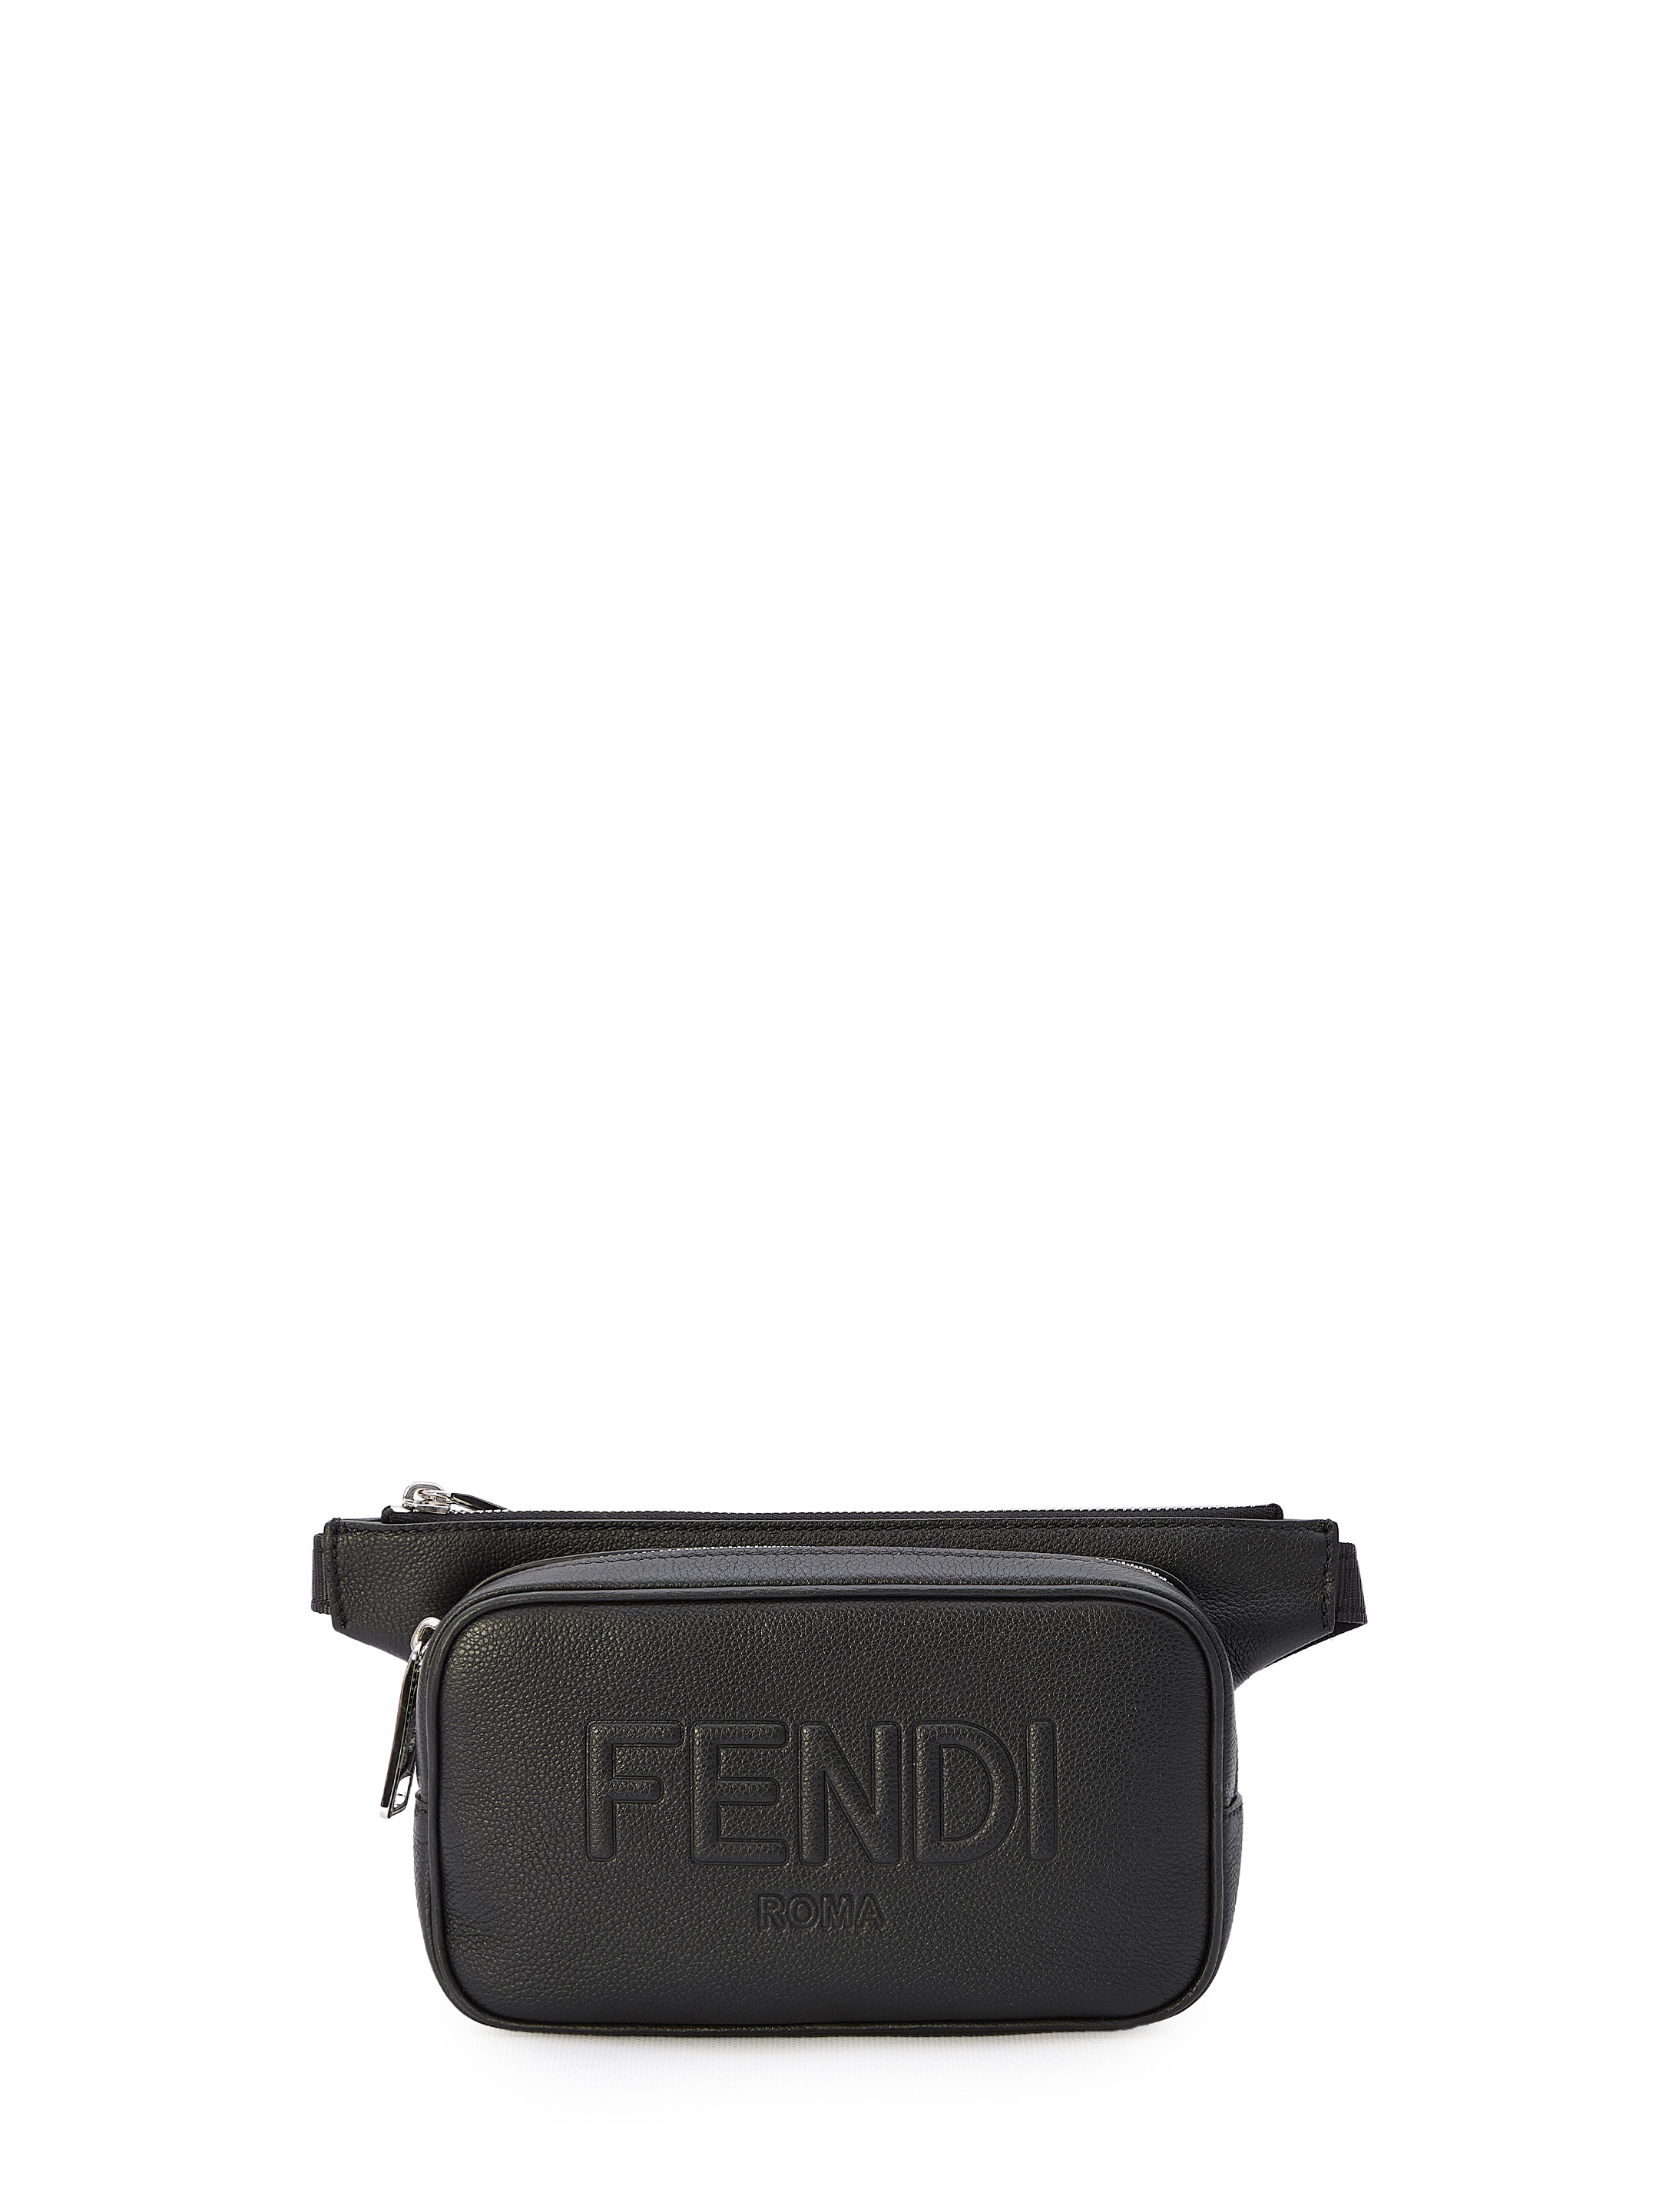 Сумка Fendi Fendi Roma belt, черный ресейл сумка fendi by the way голубой отличное